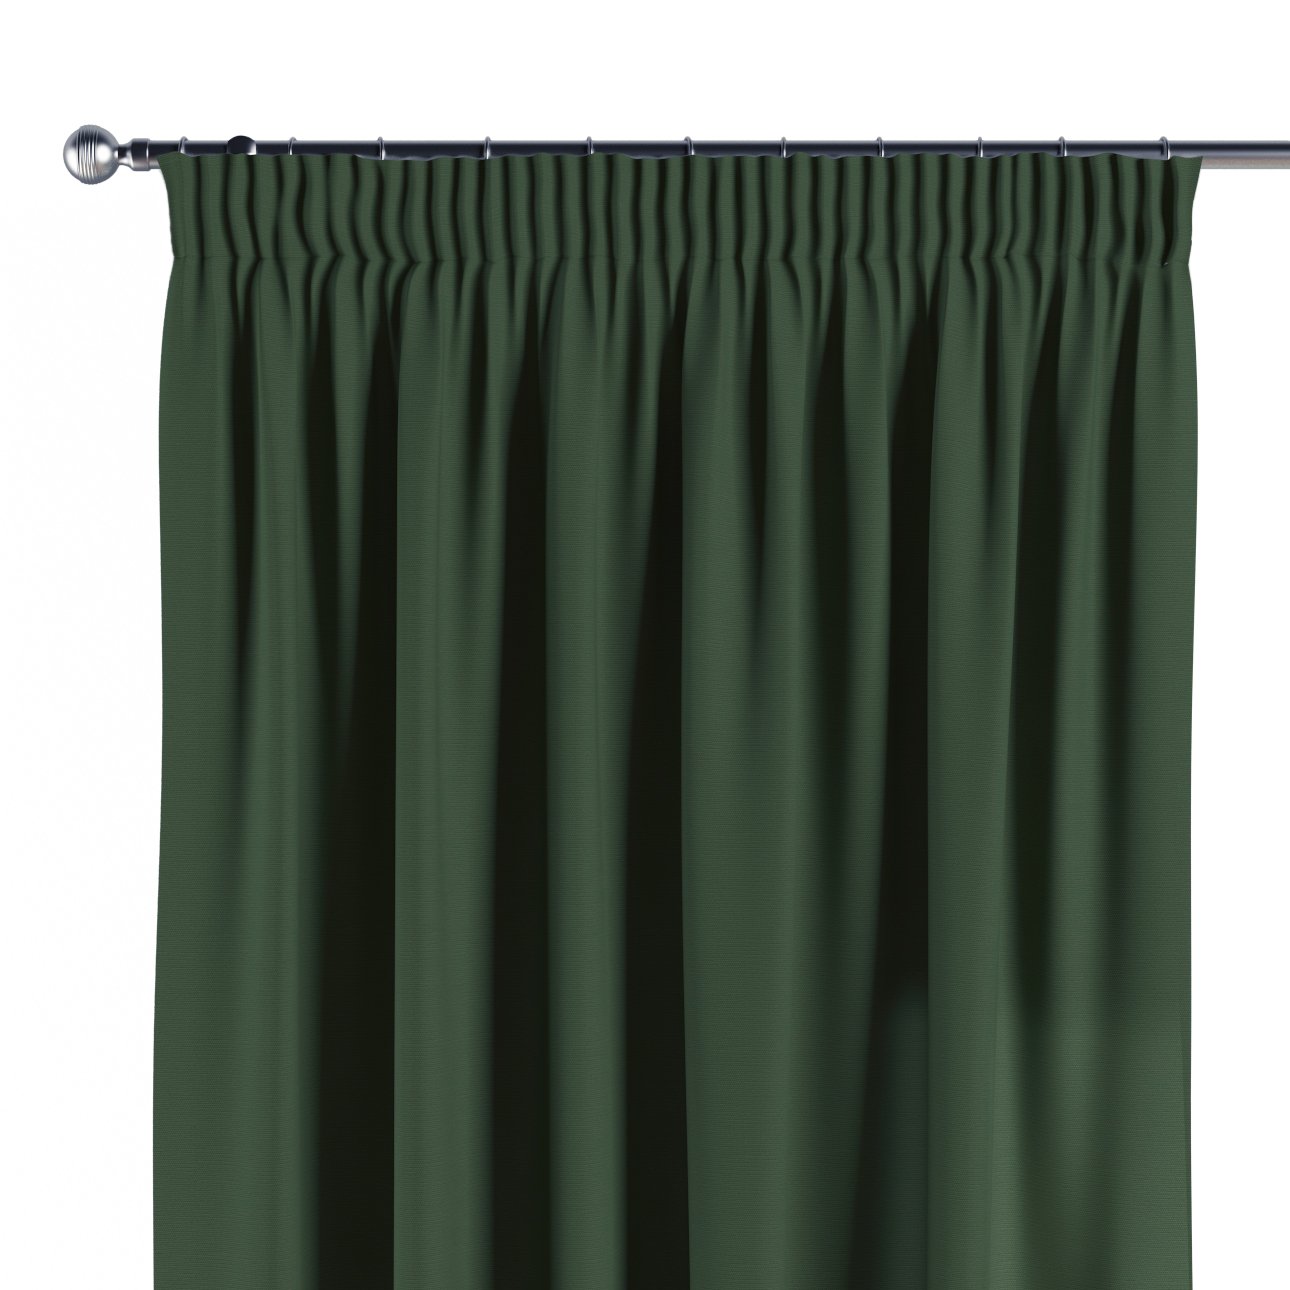 waldgrün, mit Vorhang 702-06 Kräuselband,